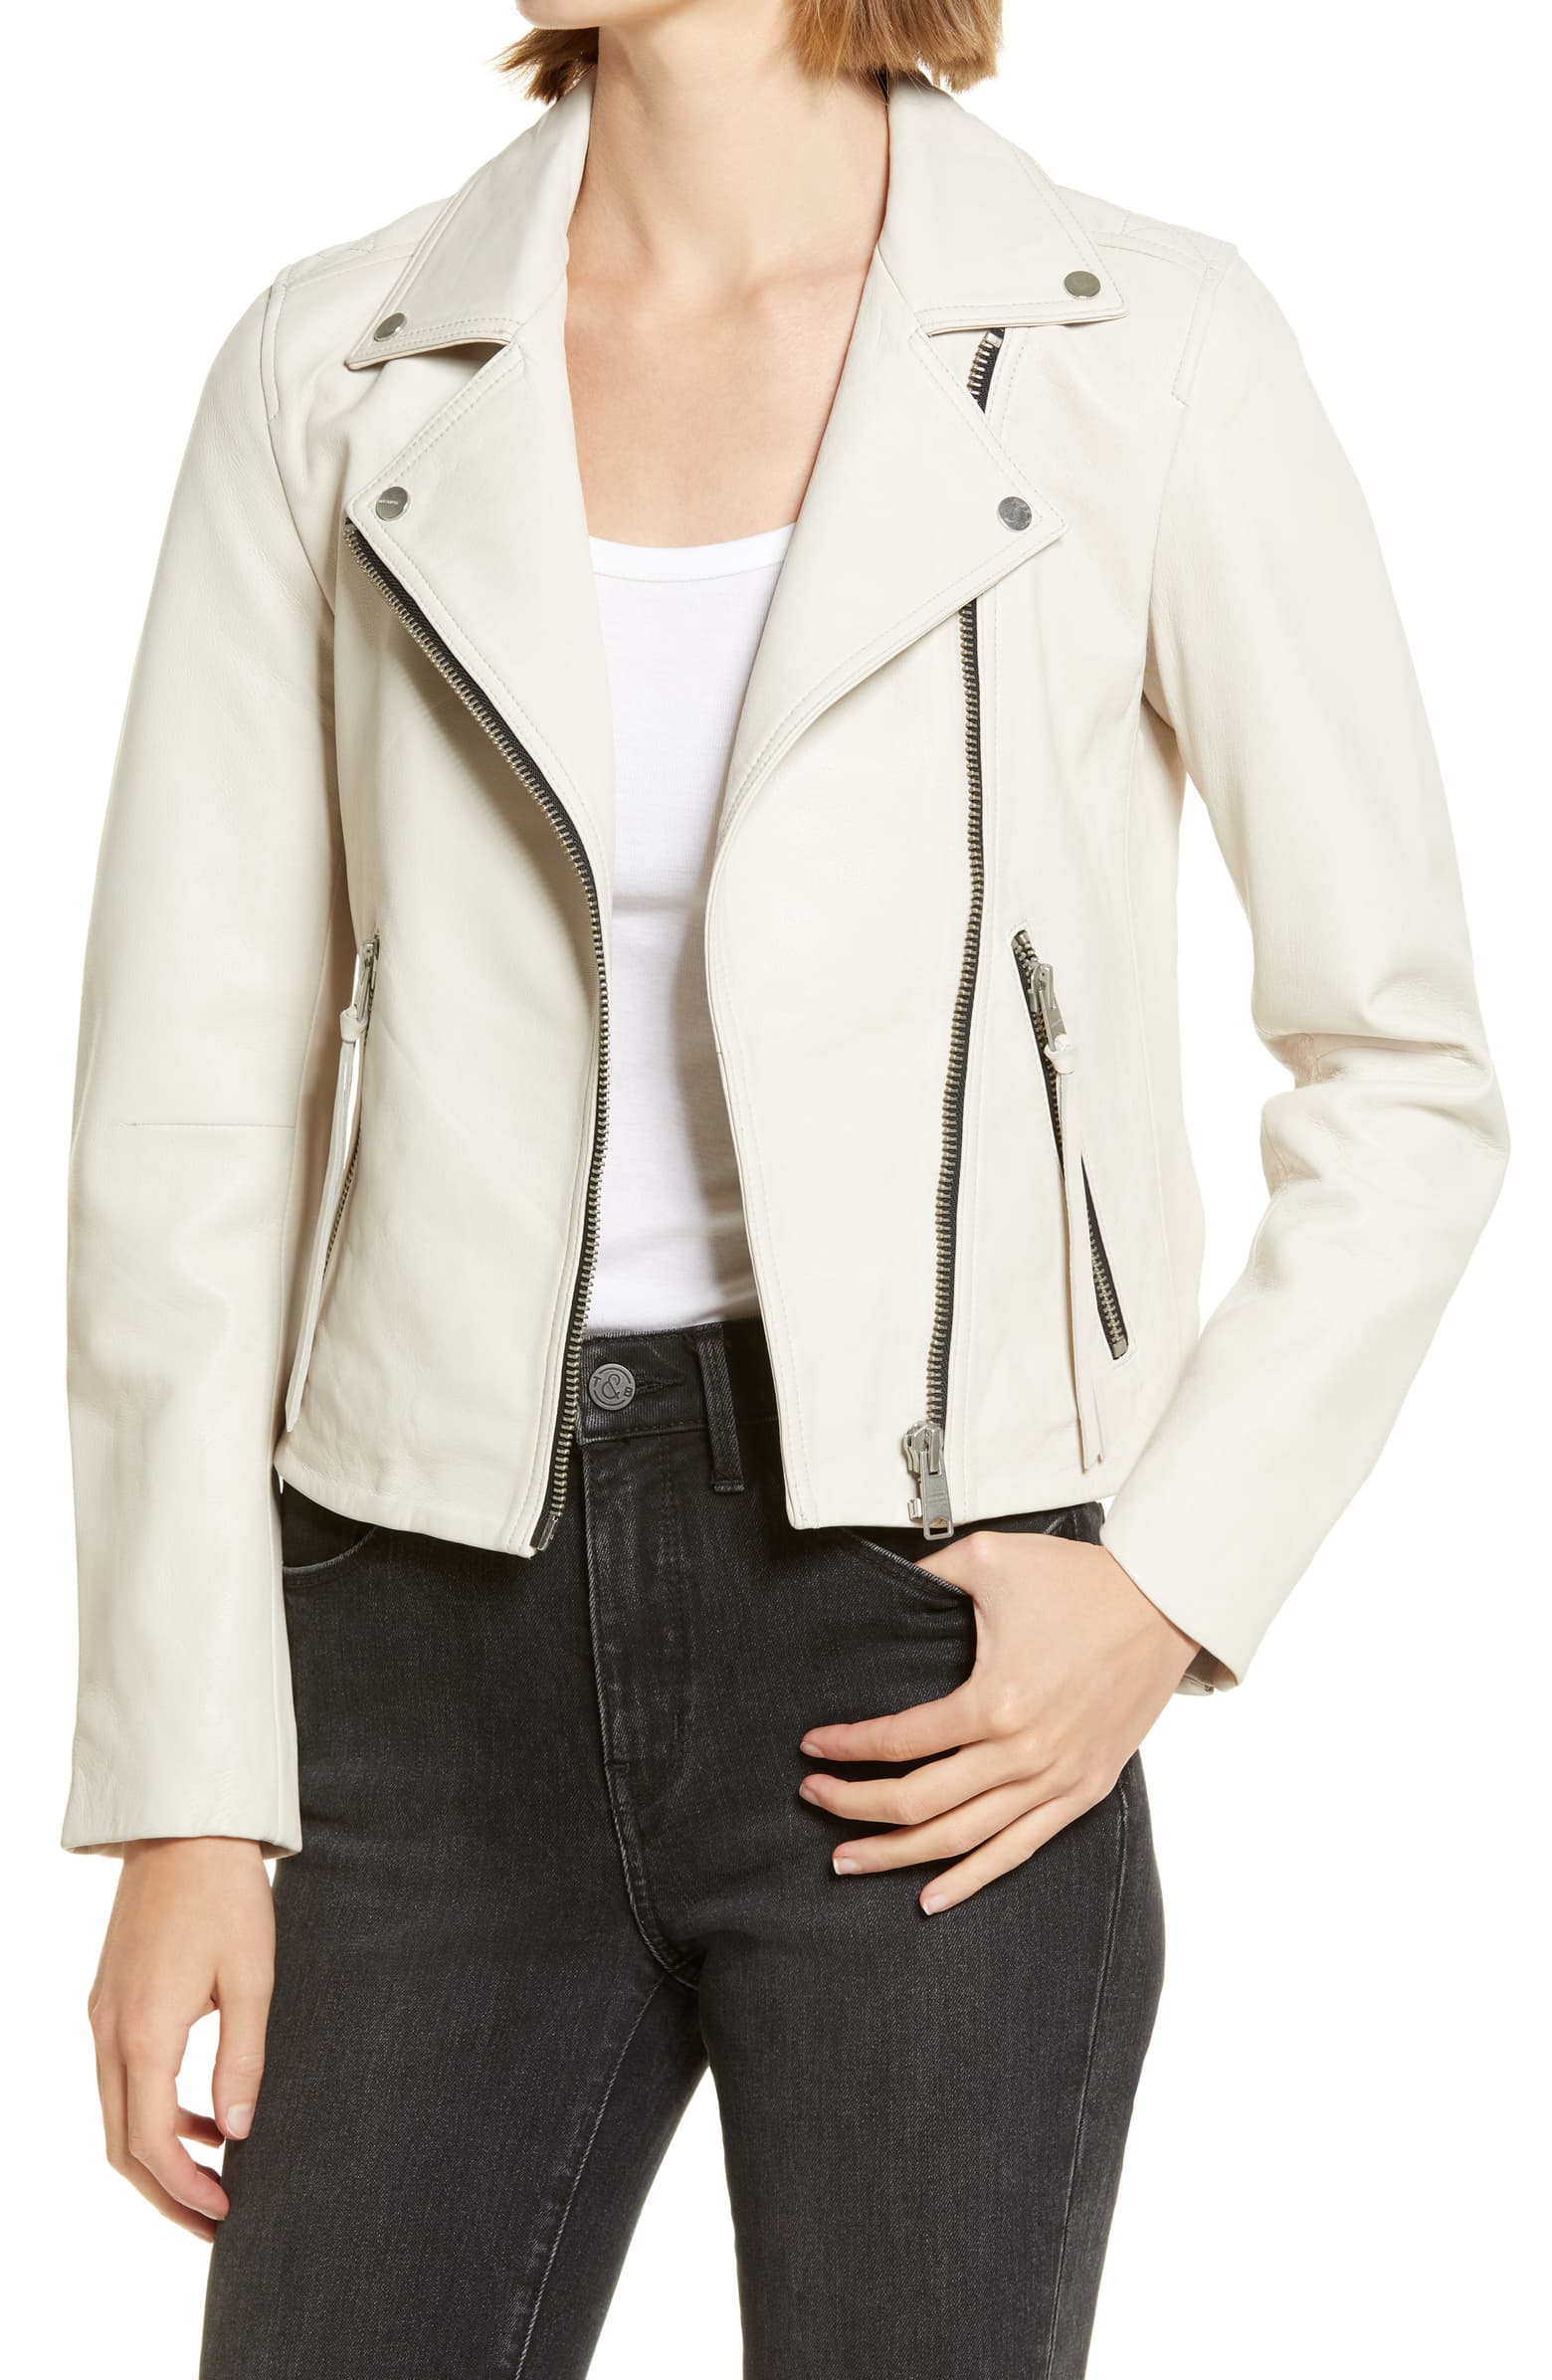 Nordstrom Sale Favorites Including The Allsaints Leather Biker Jacket In White